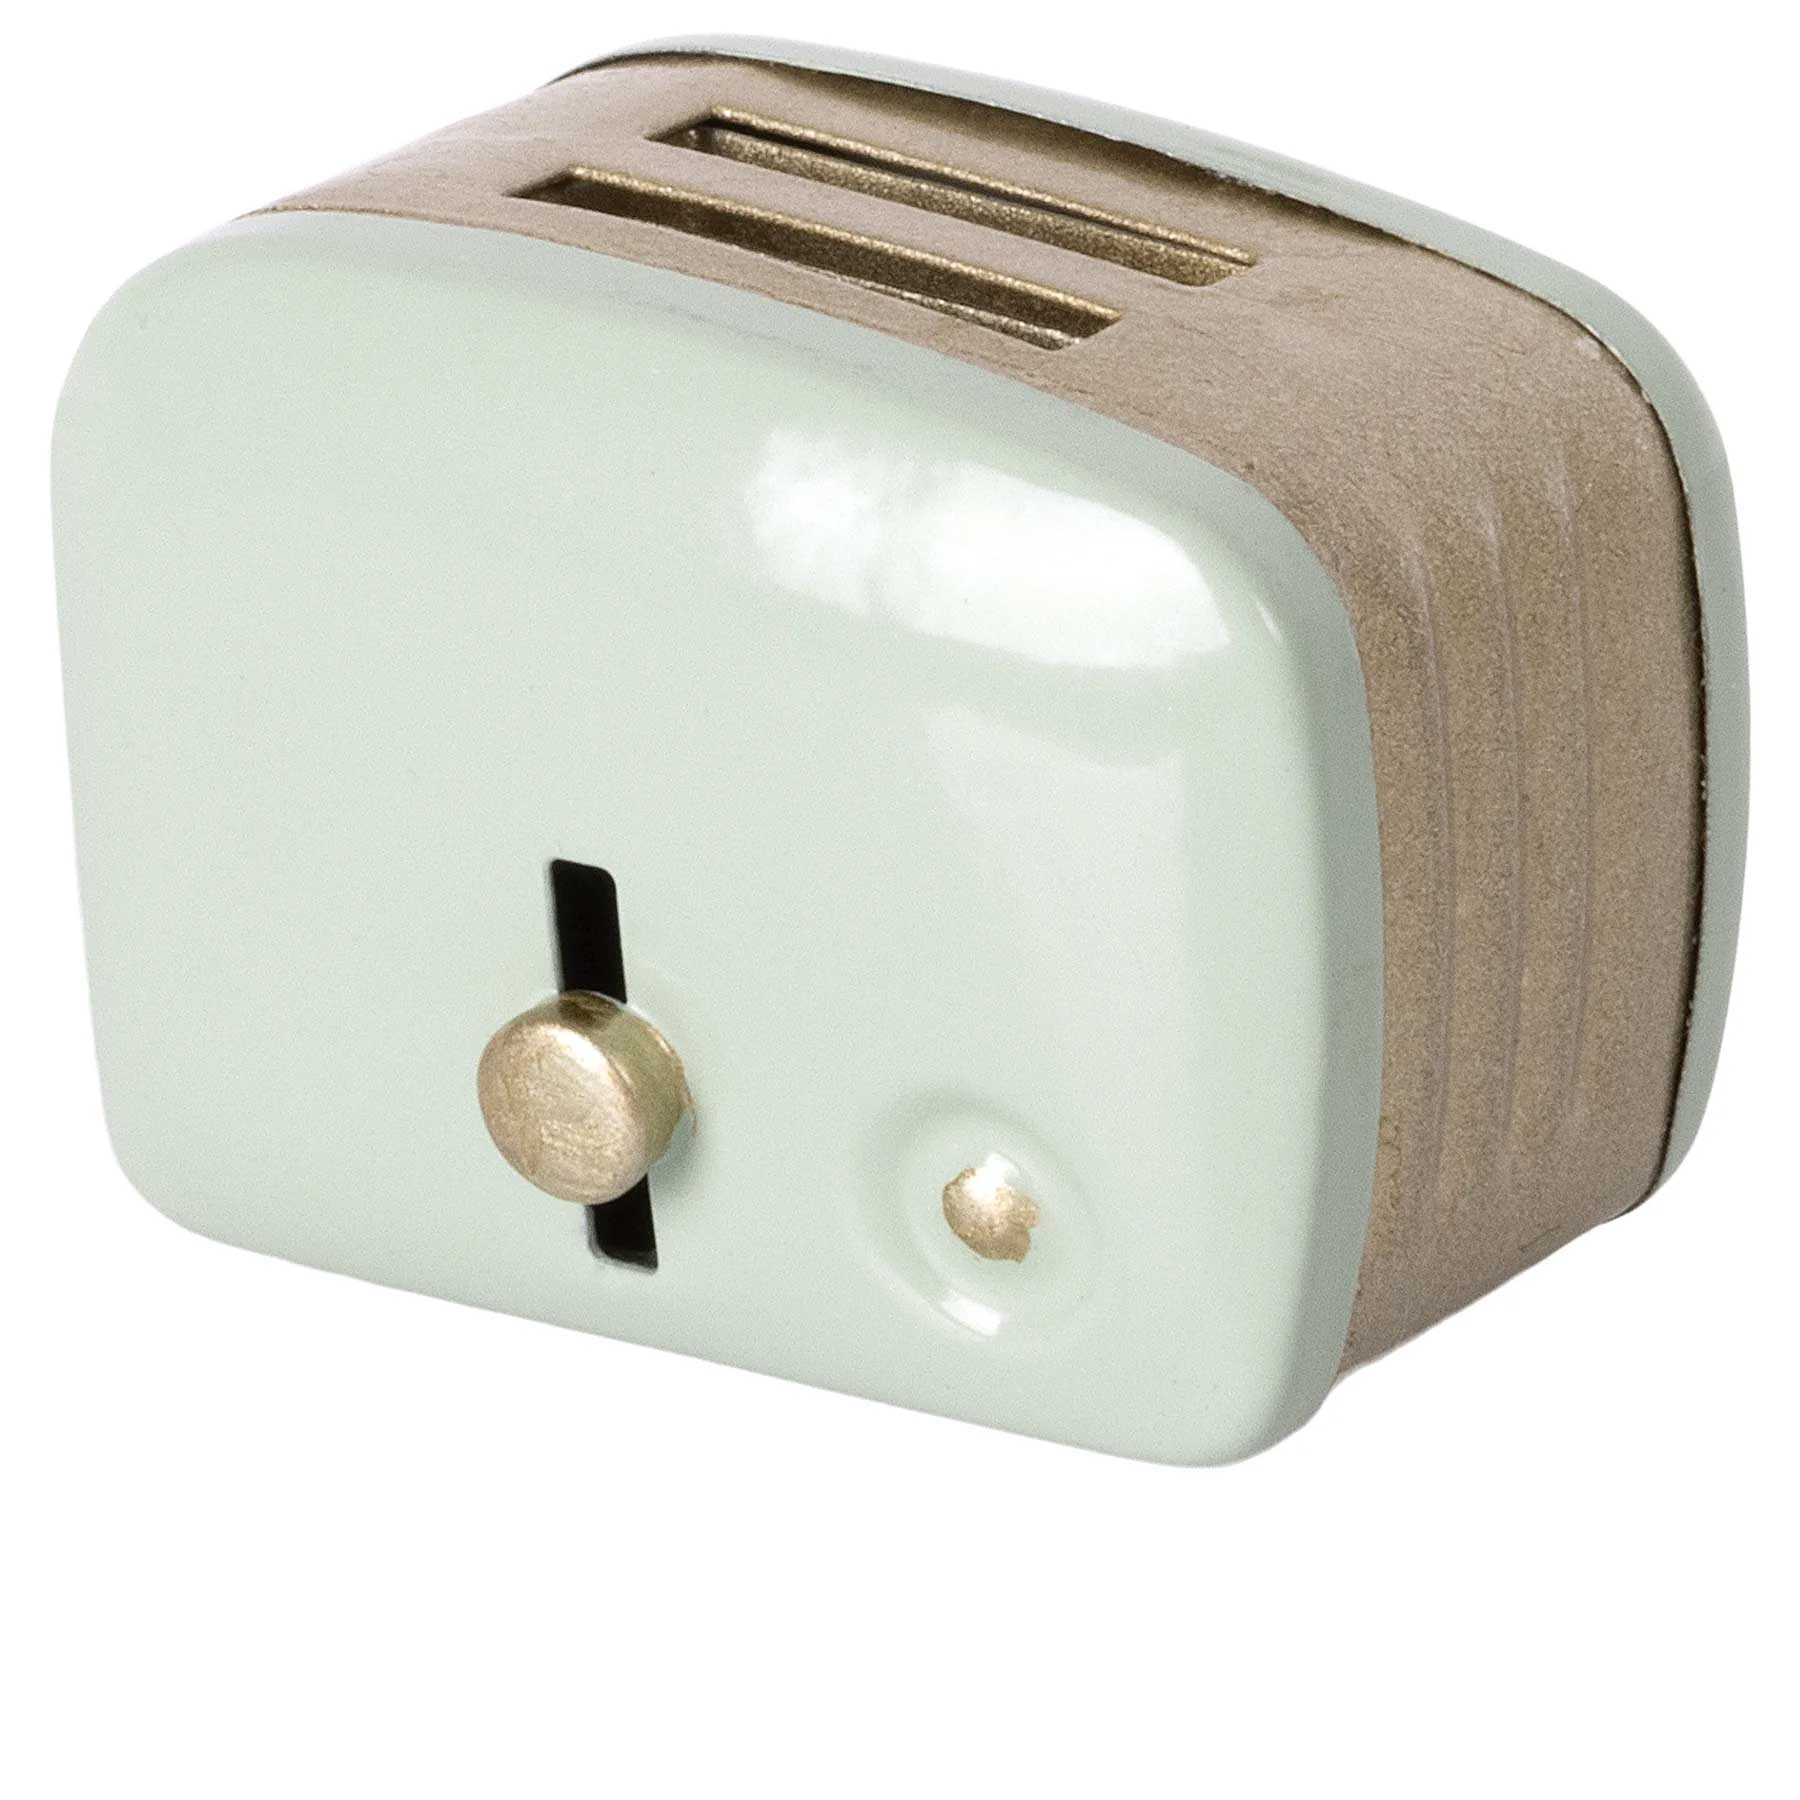 Maileg Miniature Toaster 